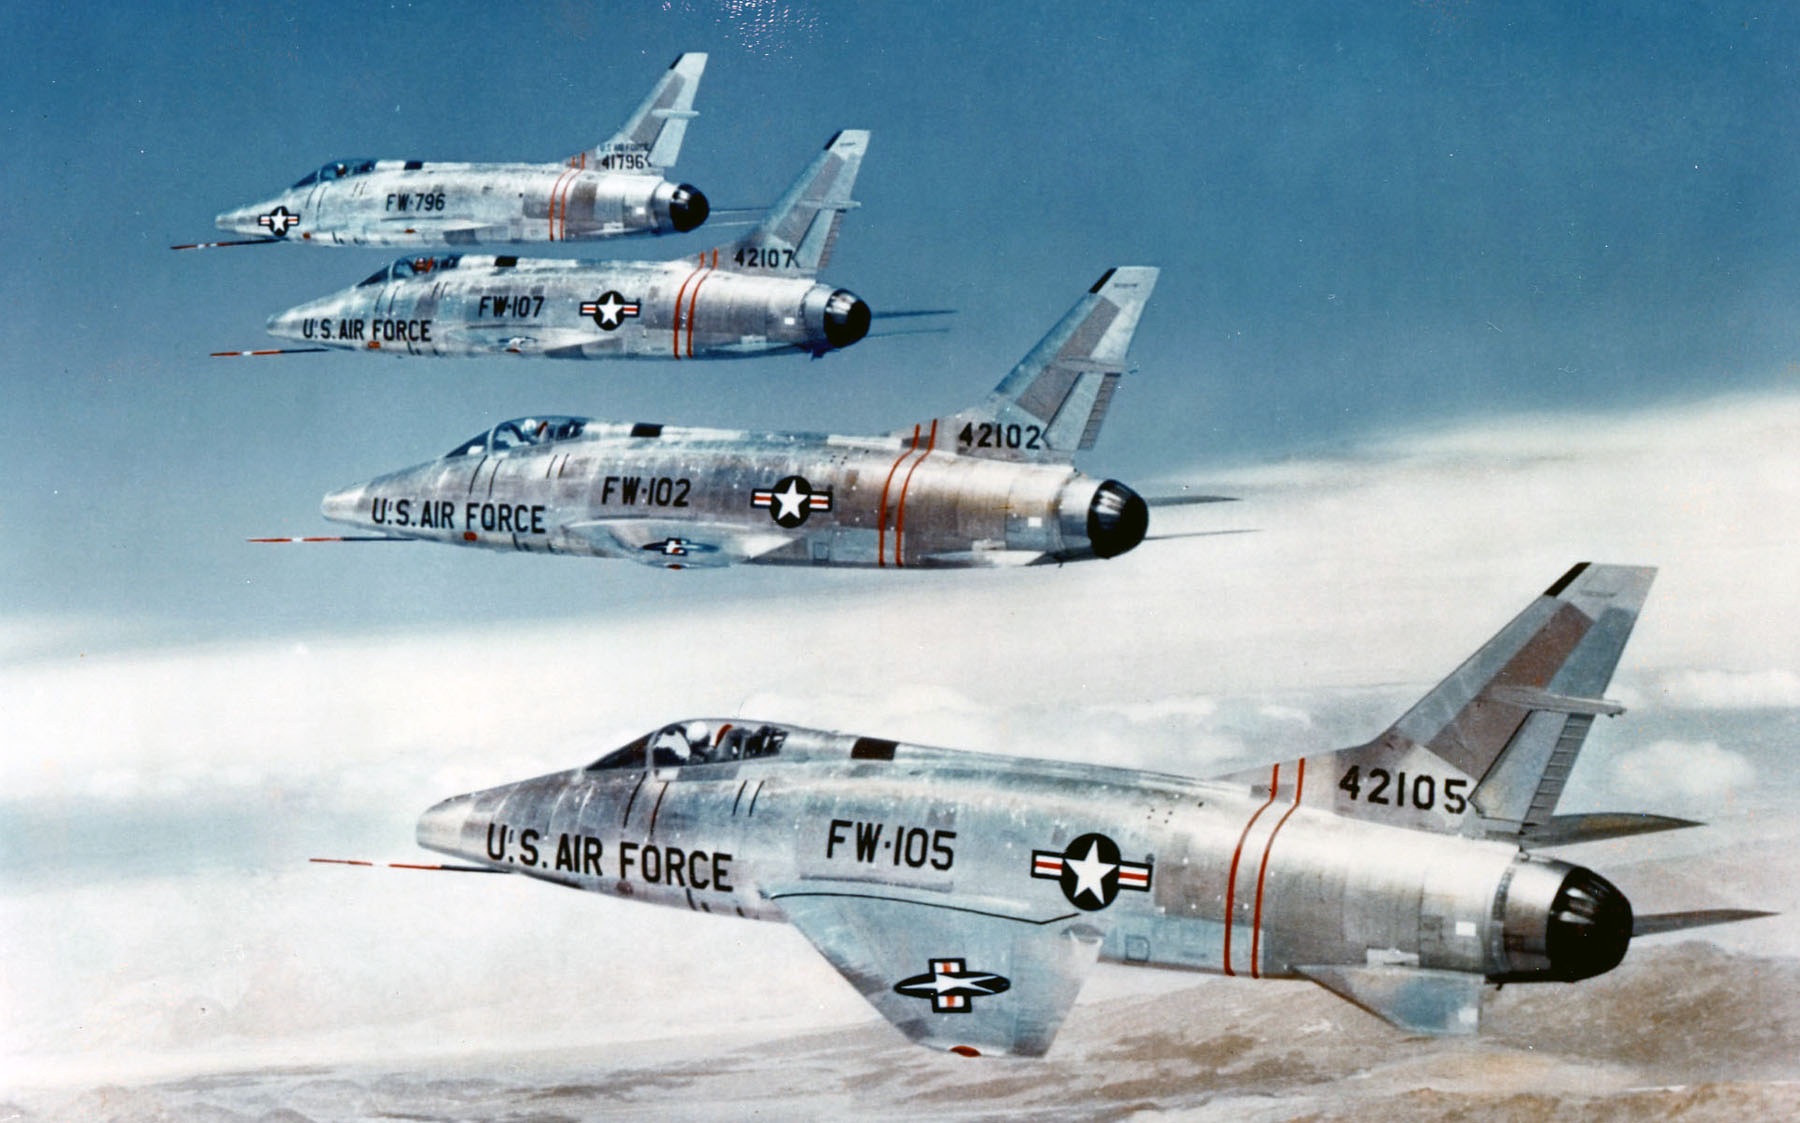 F-100 Super Sabre: Chiến đấu cơ siêu thanh đầu tiên của Mỹ là huyền thoại hay thảm họa? - Ảnh 2.